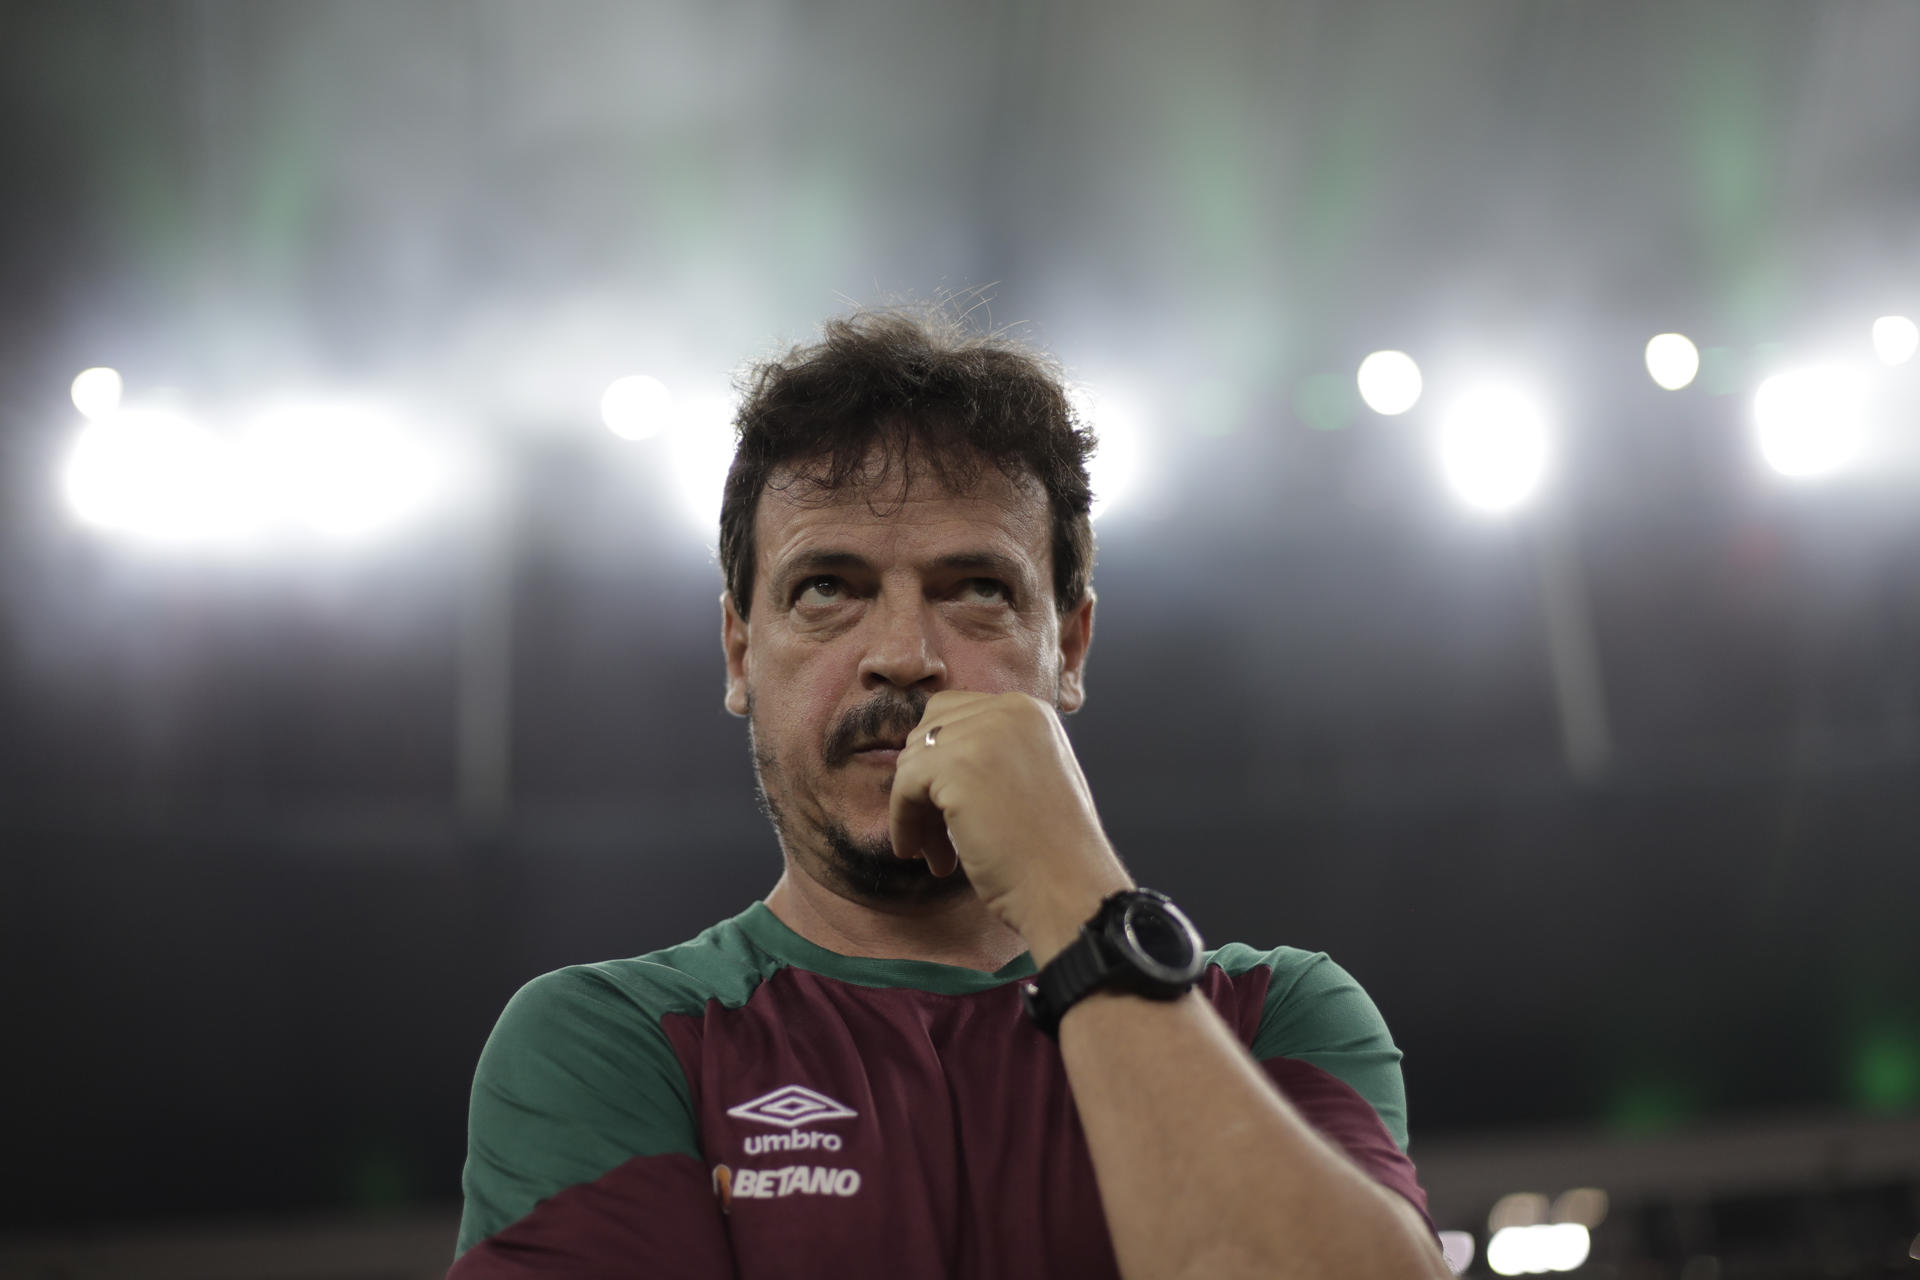 Fotografía de archivo en la que se registró al entrenador del club brasileño de fútbol Fluminense, Fernando Diniz, durante un partido en el estadio Maracaná​​ de Río de Janeiro (Brasil). EFE/ Antonio Lacerda